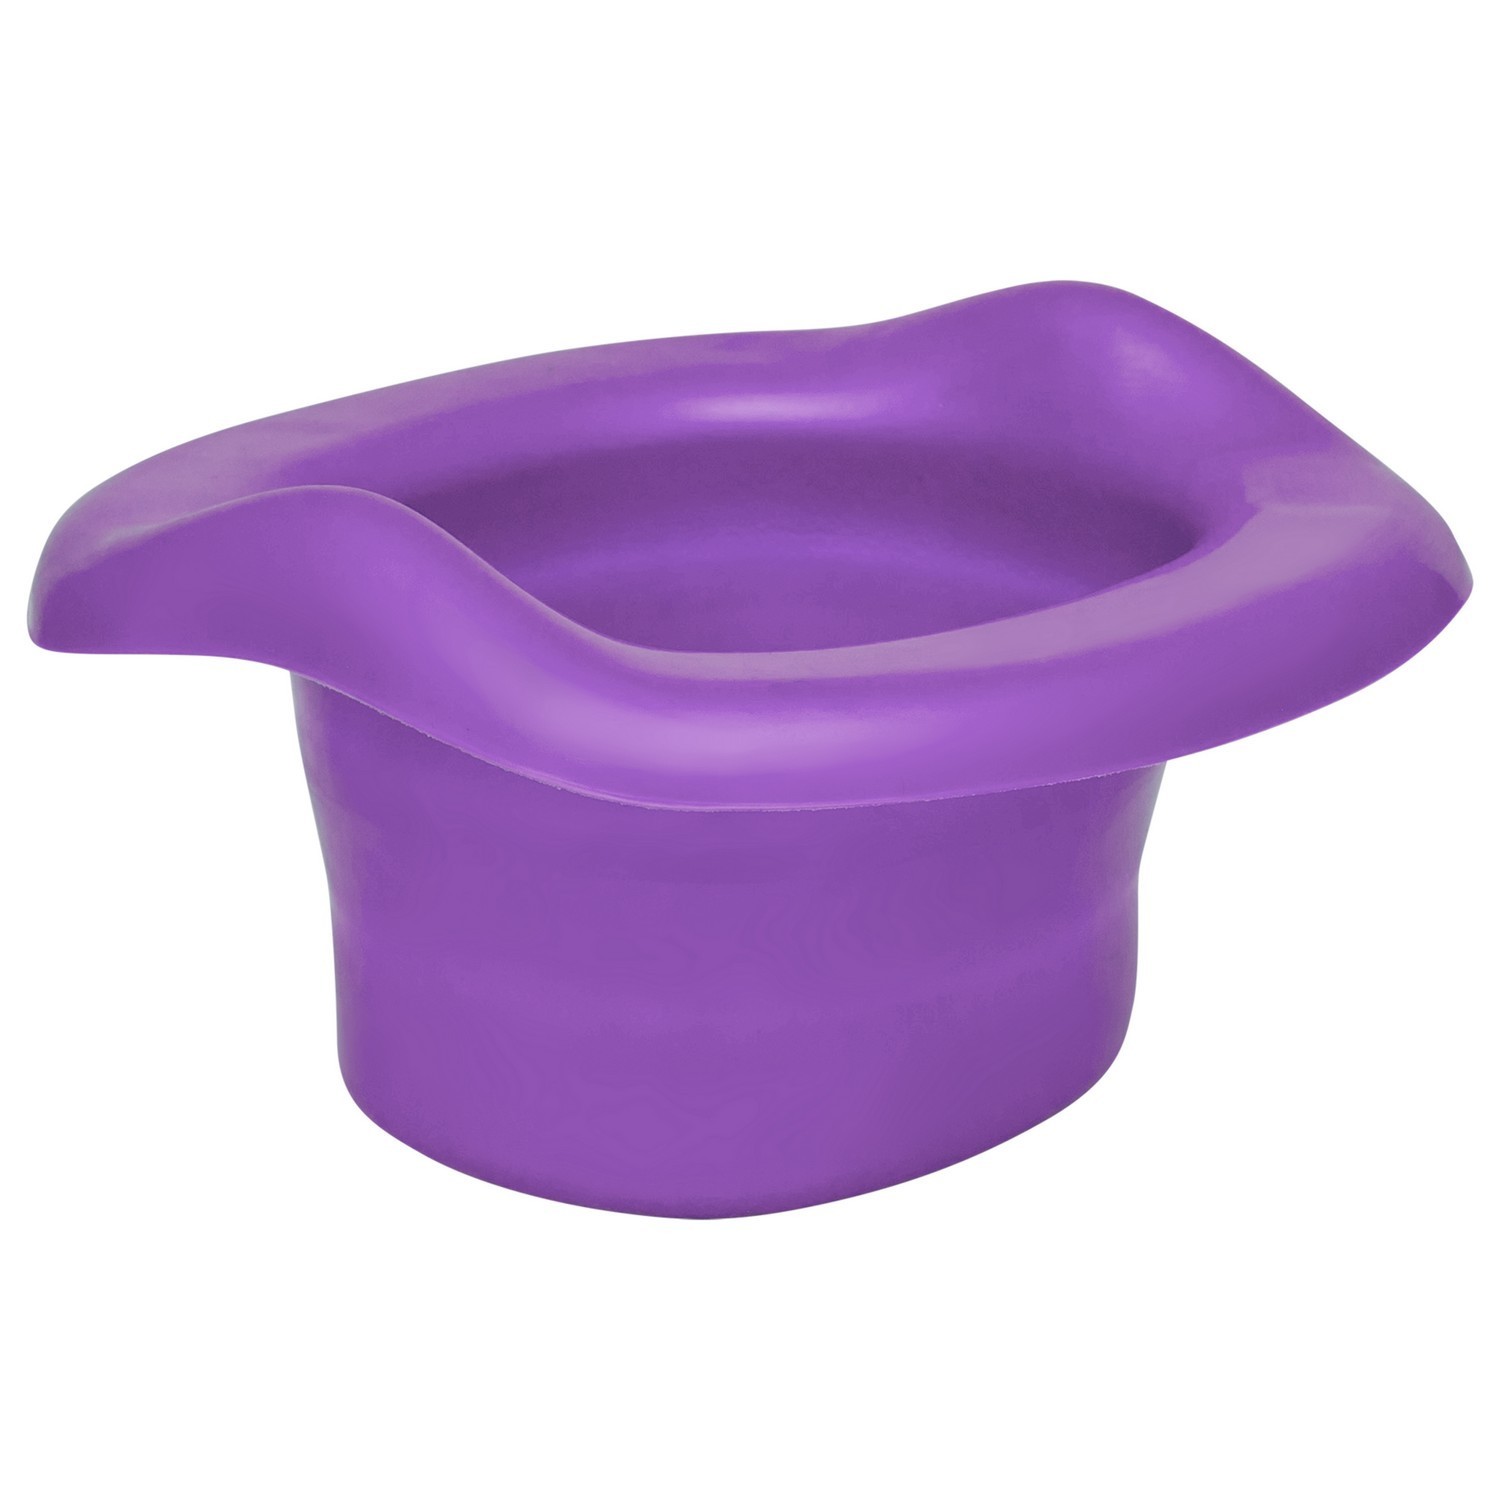 Вкладка для дорожных горшков ROXY-KIDS универсальная Фиолетовый - фото 1